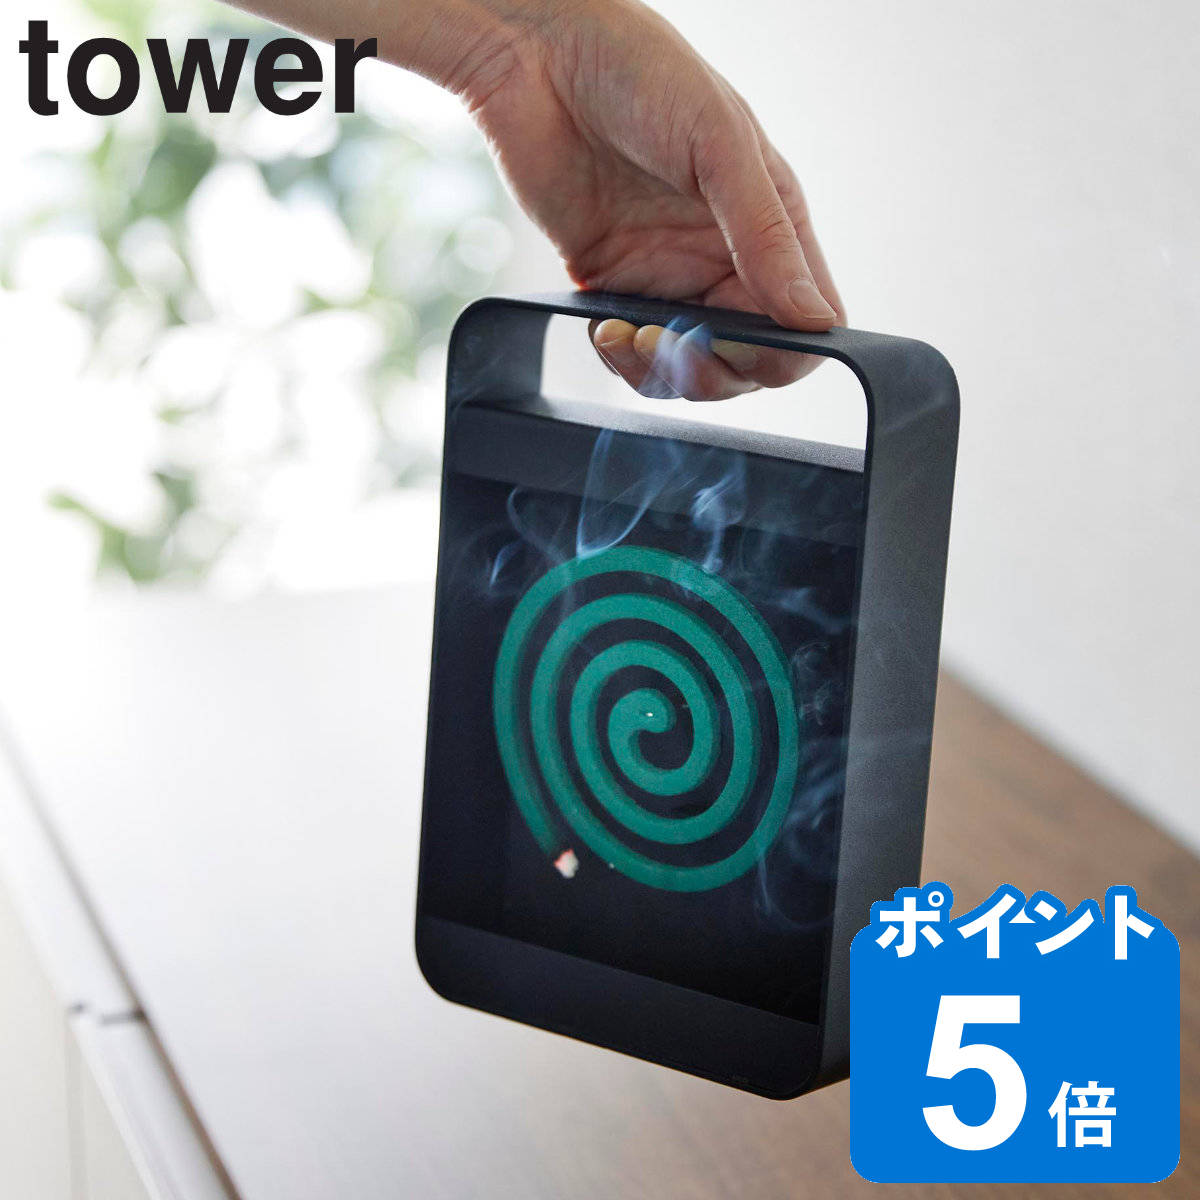 山崎実業 tower ハンドル付き蚊取り線香スタンド タワー